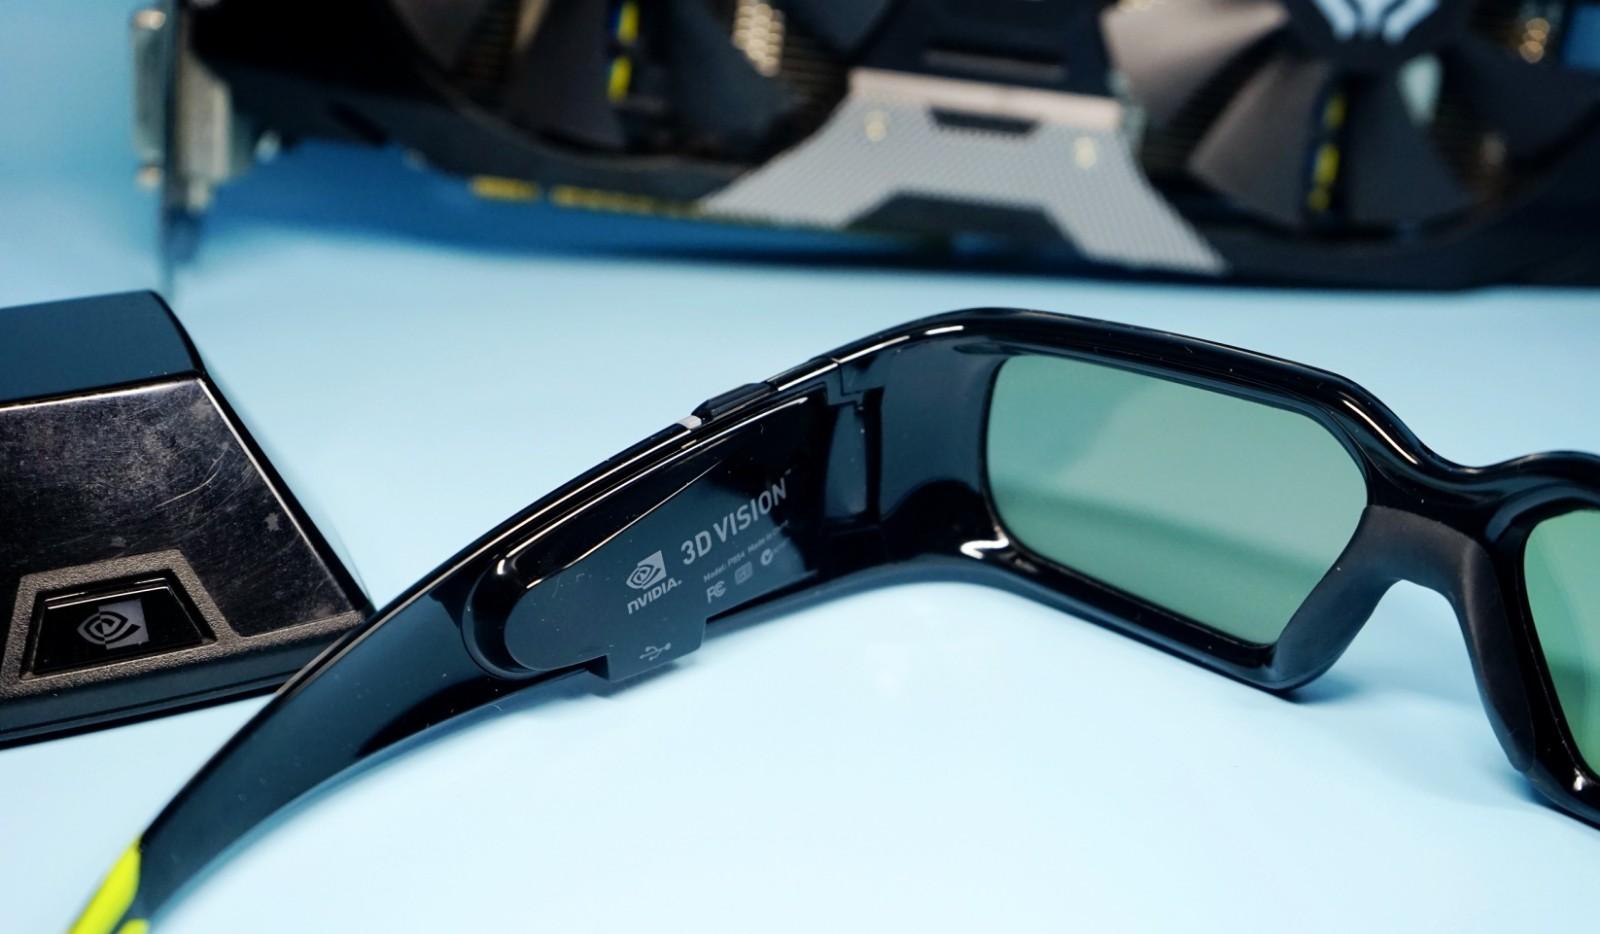 15元一副的3d眼镜 gtx 1050ti显卡让nvidia 3d套装重新焕发活力